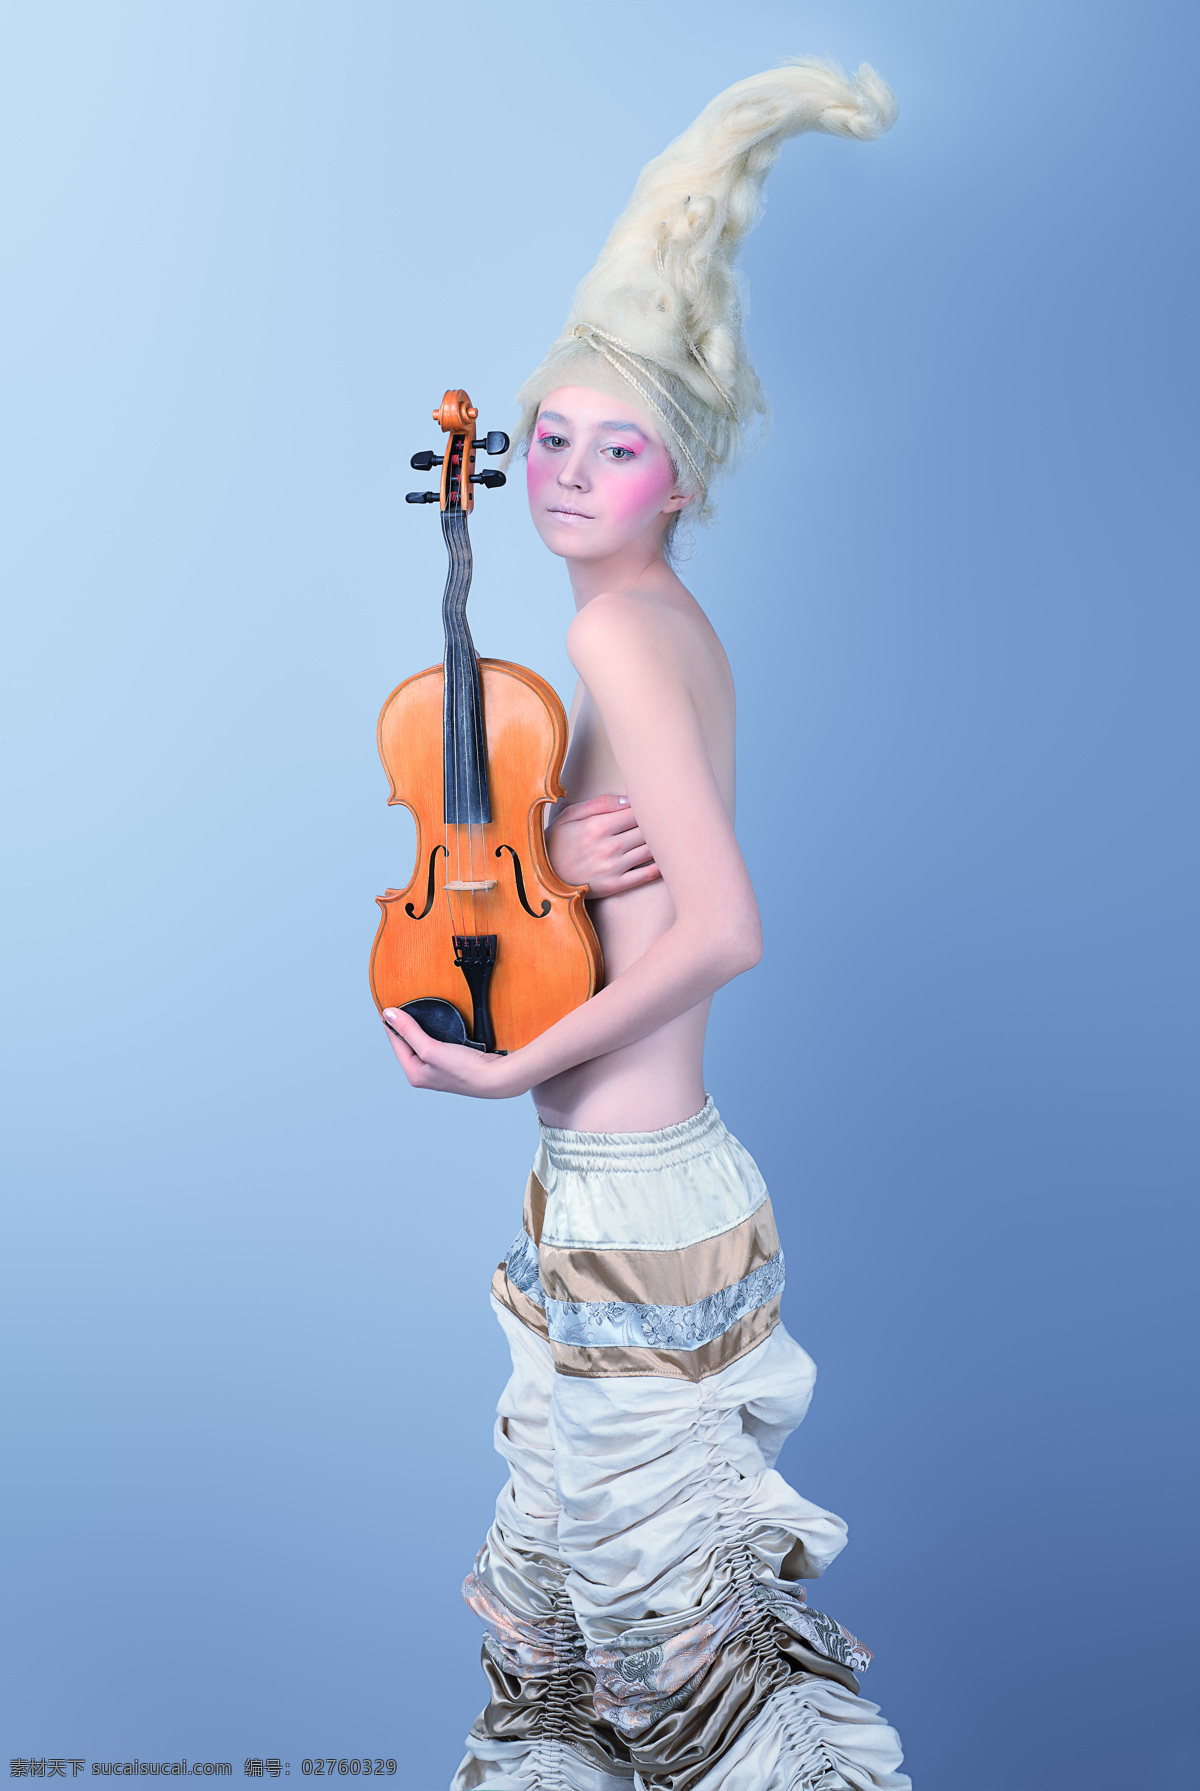 金发 女郎 小提琴 金发女郎 音乐 个性 造型 时尚 美女 外国美女 女性女人 高清图片 美女图片 人物图片